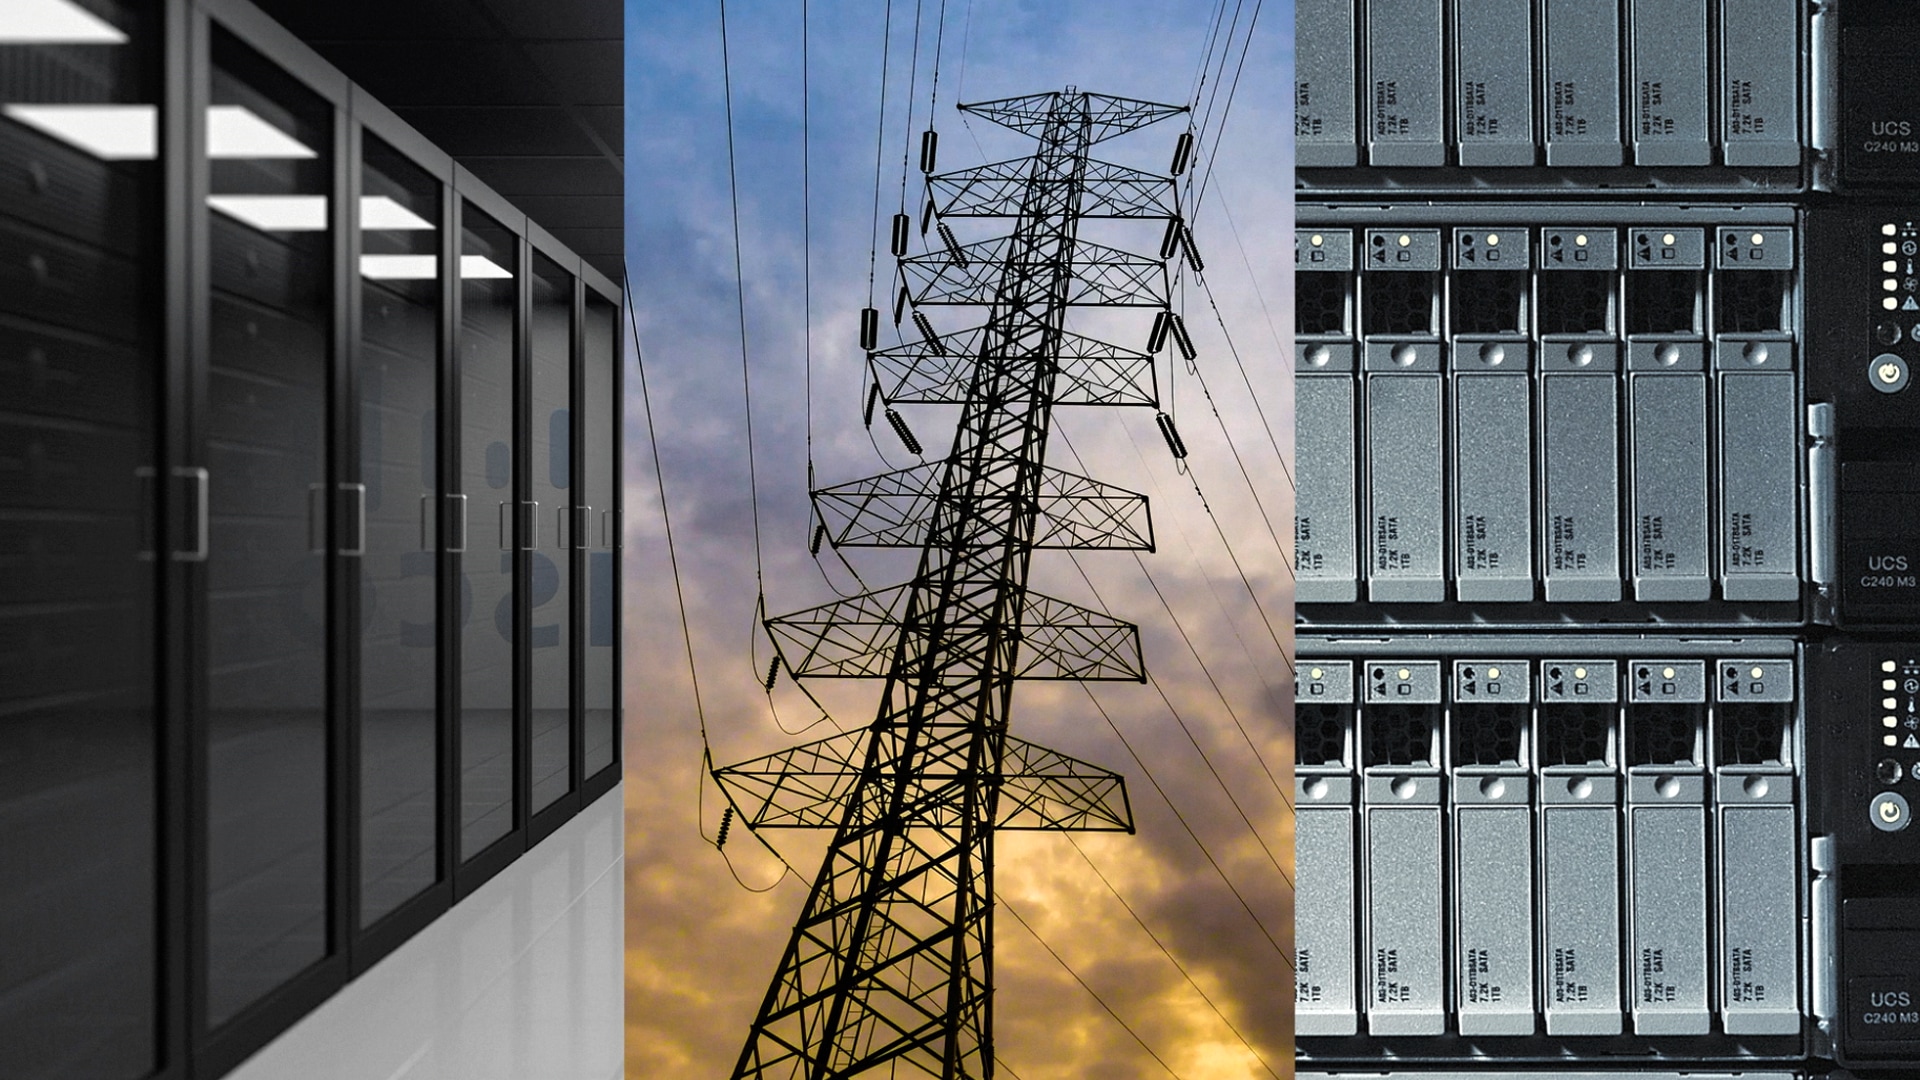 Serverraum, Stromverteilerturm und Cisco Netzwerkausrüstung